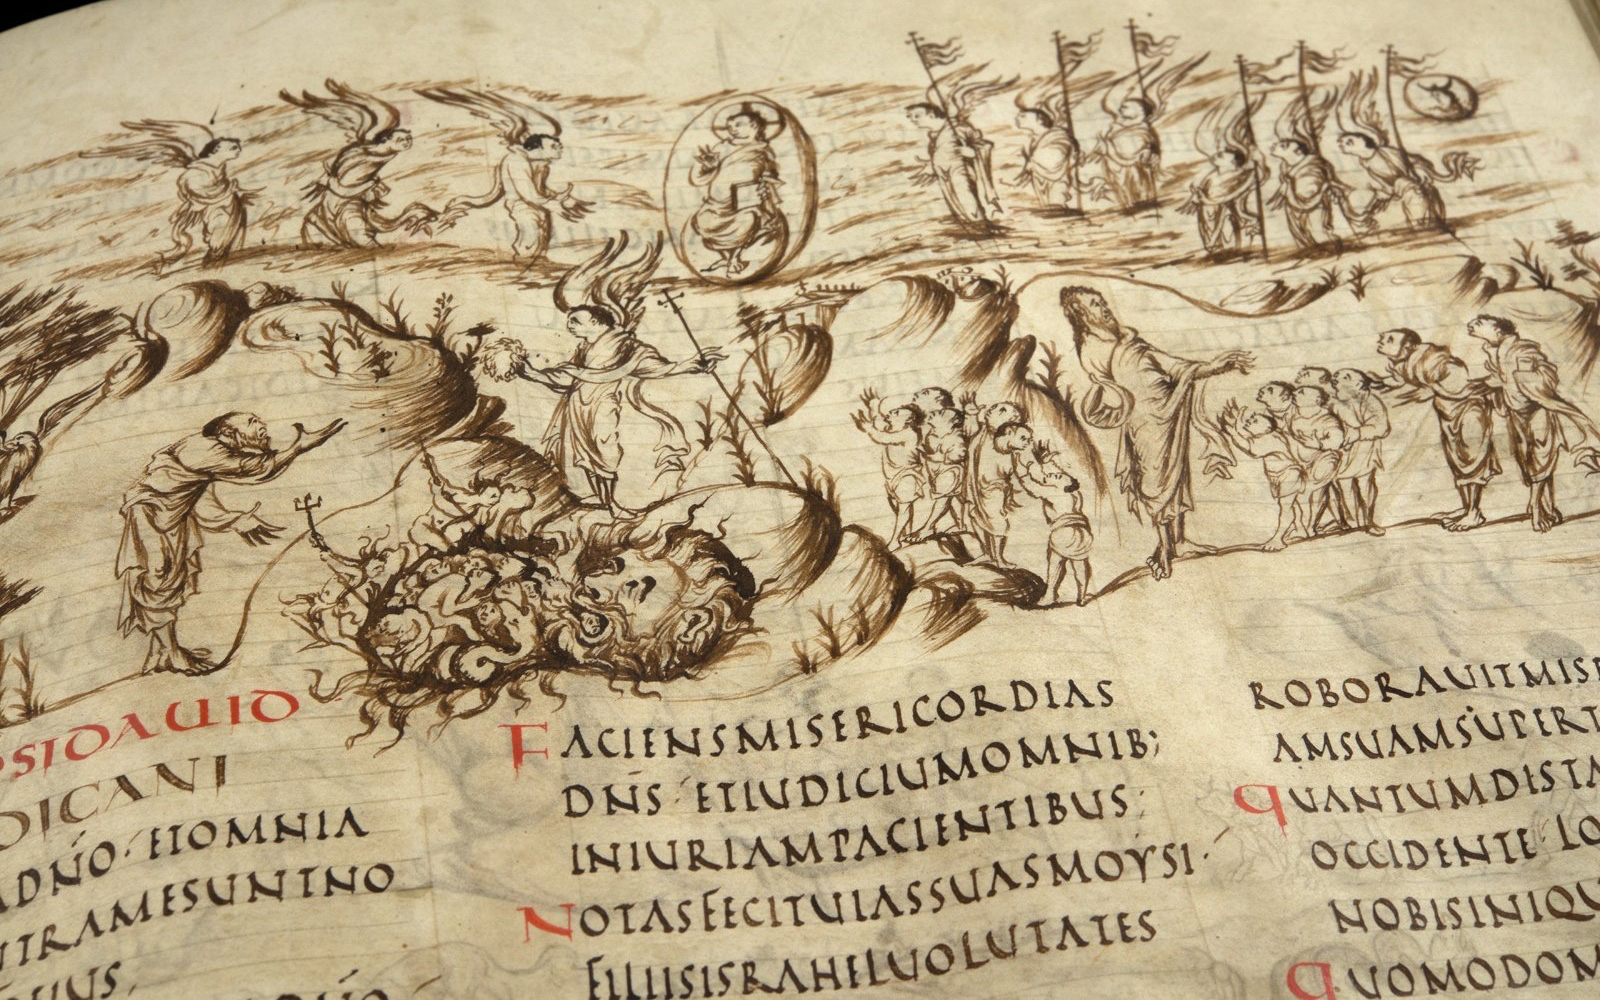 De liederen in het Utrechts Psalter zijn stuk voor stuk rijk geïllustreerd met verhalende tekeningen.